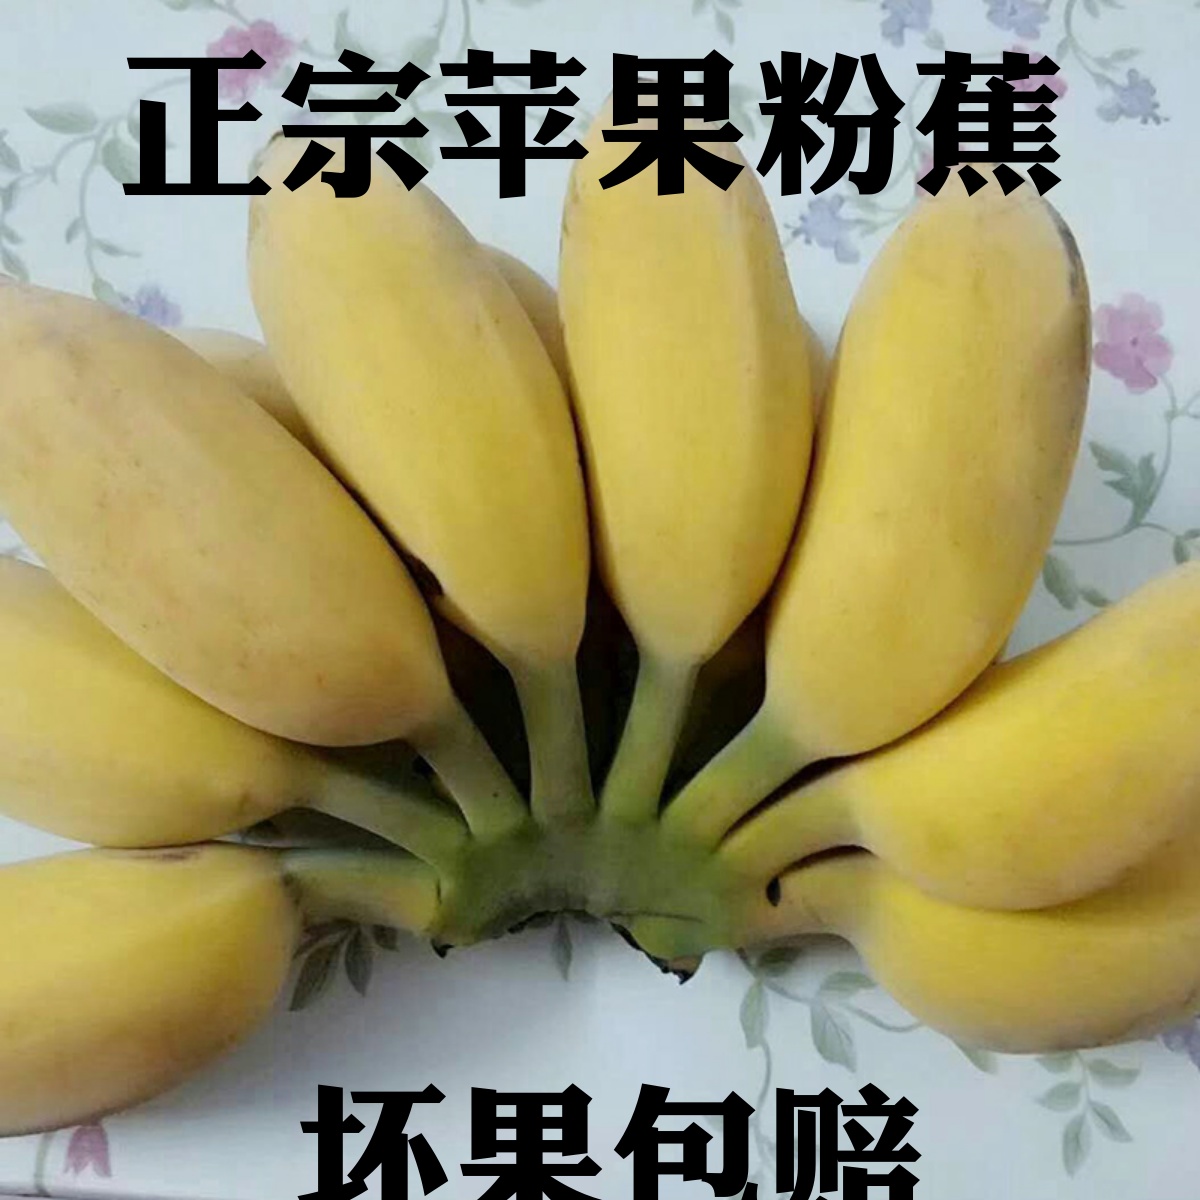 苹果香蕉小米焦粉蕉帝王蕉绿香蕉野生芭蕉水果香蕉新鲜大芭蕉5斤